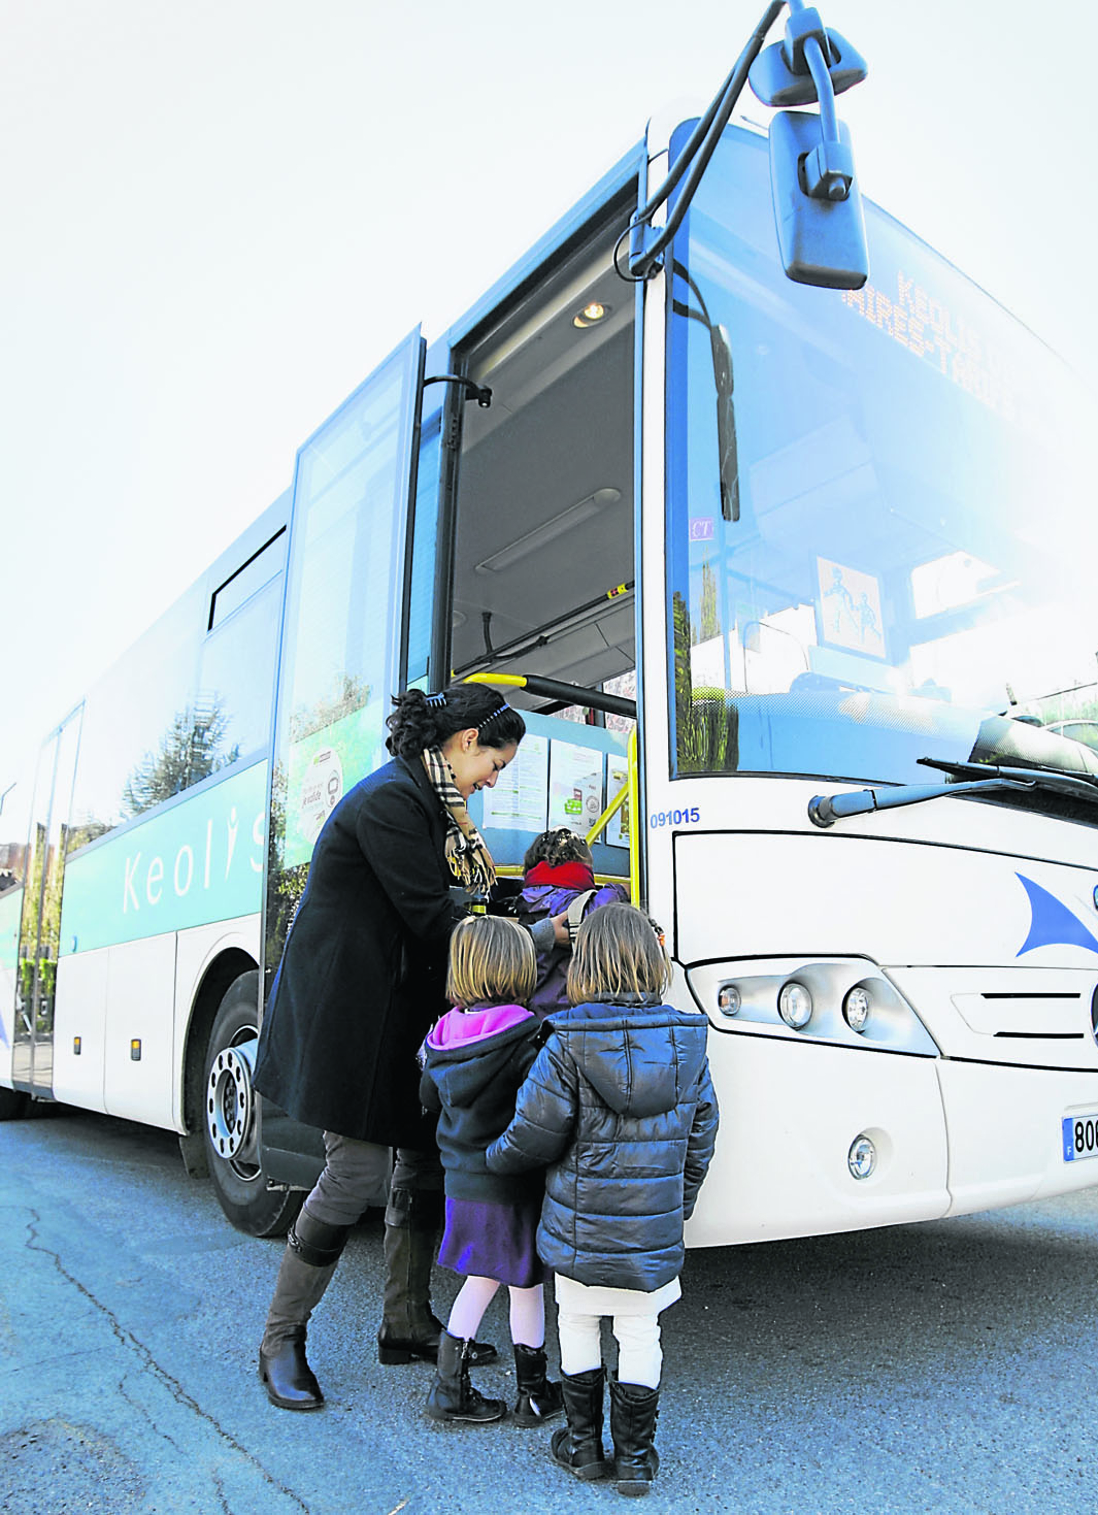 Eleves, trajet vers l'ecole en transport en commun, autobus, bus
Enfants, compagnie Keolis